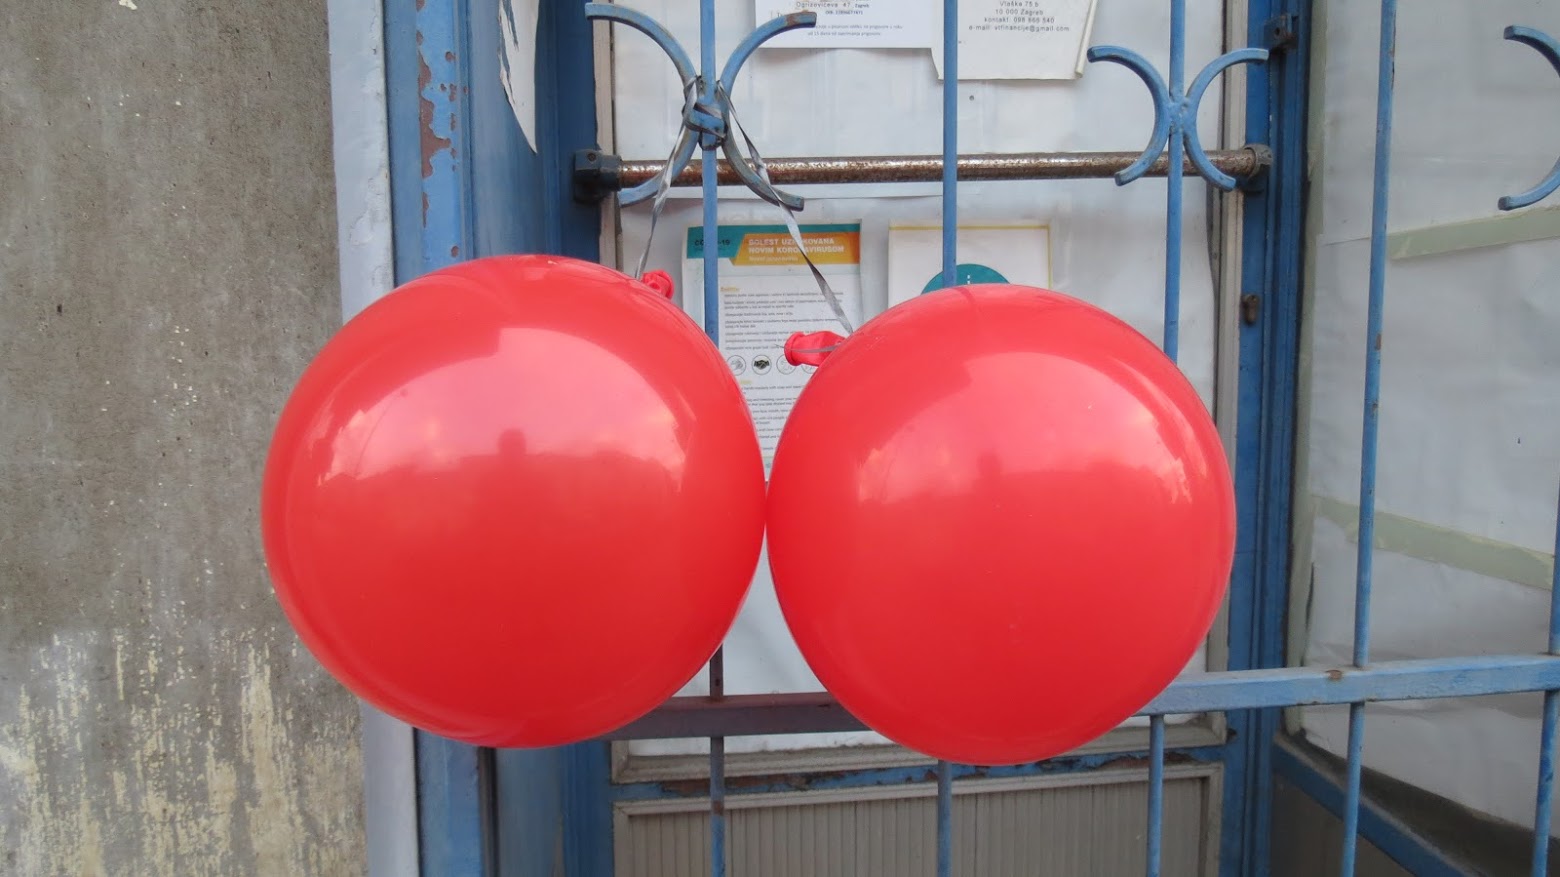 Crveni baloni - trešnjice, kao simboli Trešnjevke prožete zajedništvom [VR 2021.]